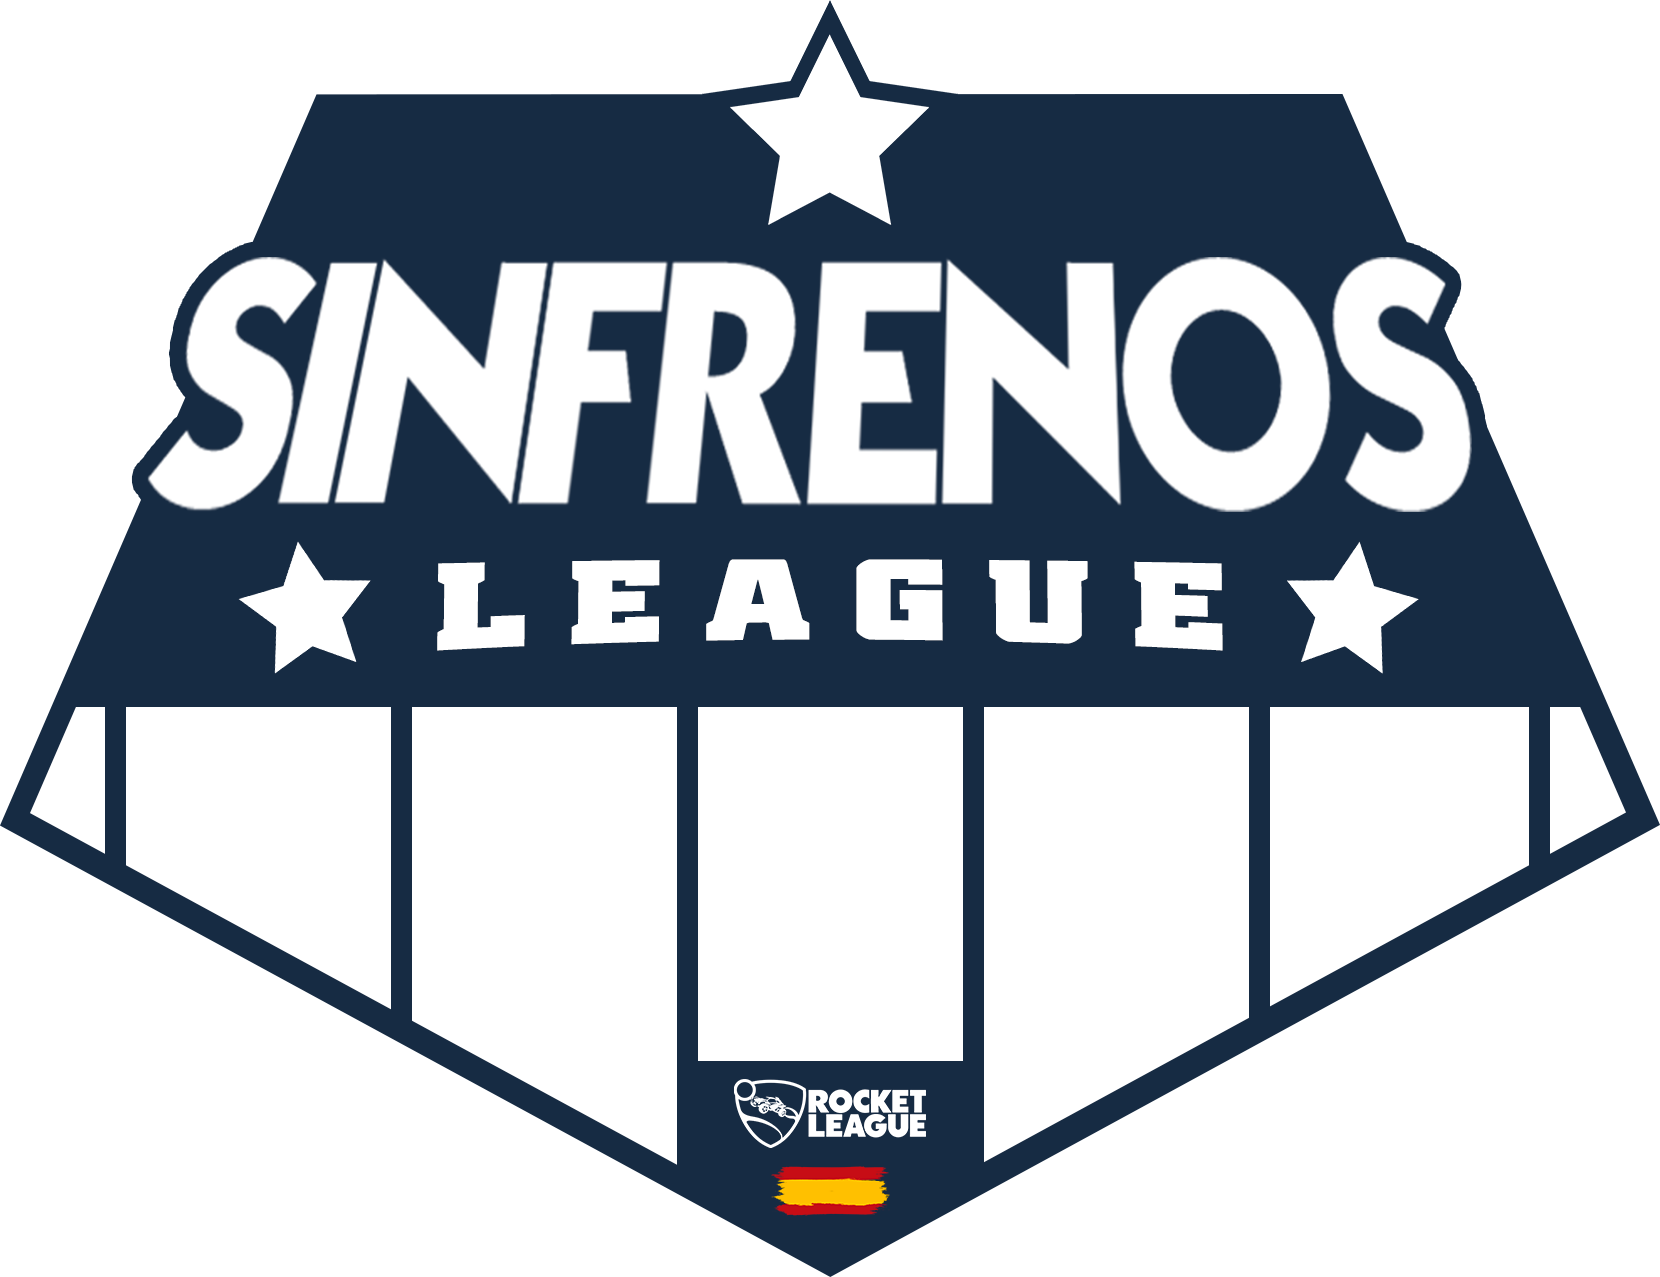 Sinfrenos League